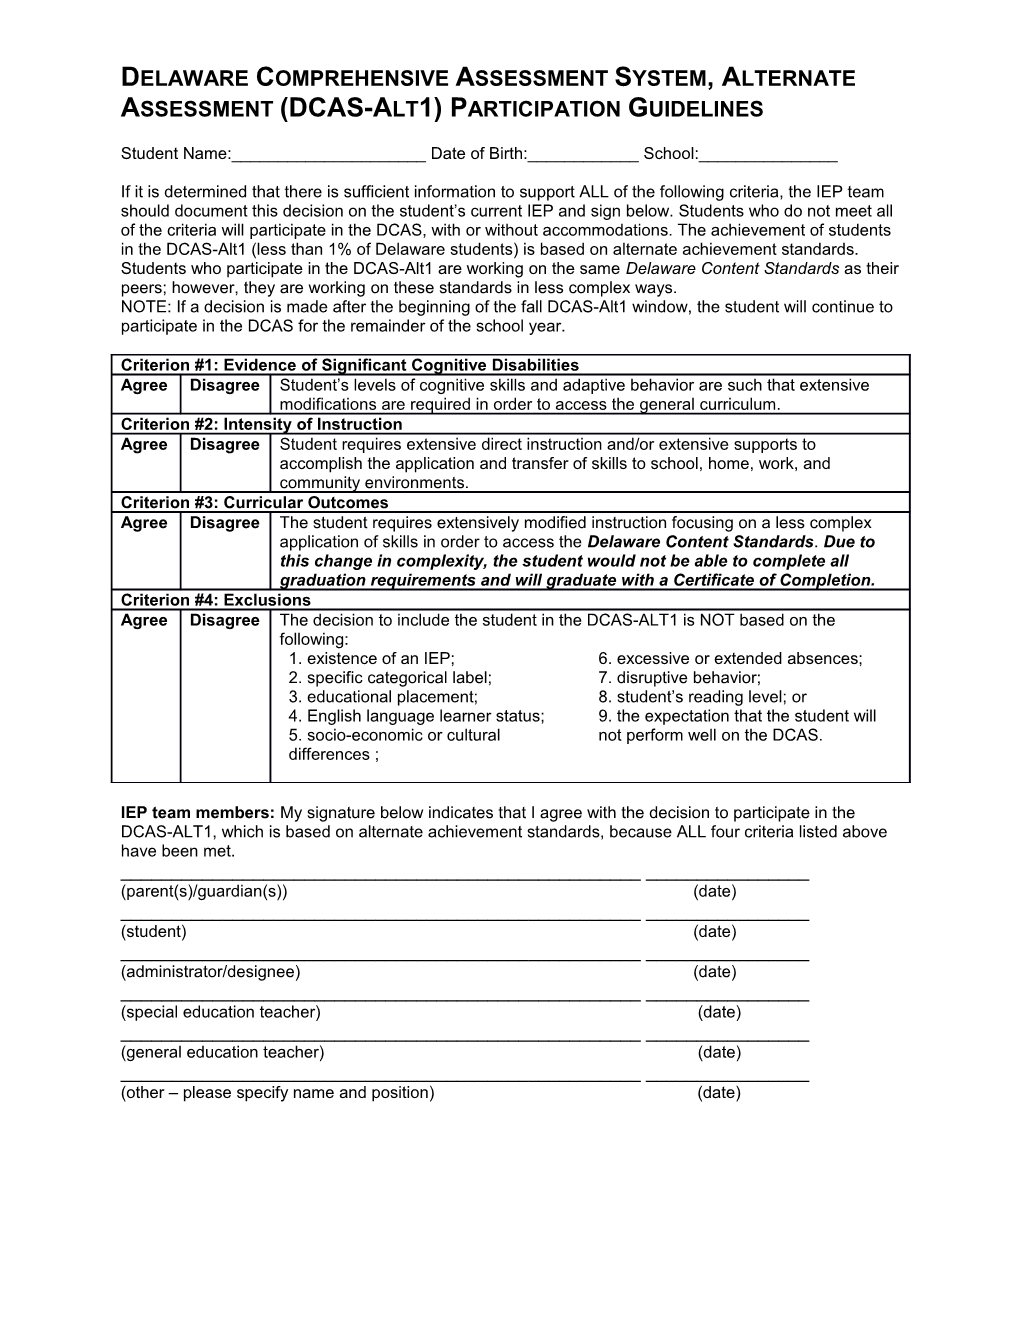 Delaware Comprehensive Assessment System, Alternate Assessment (Dcas-Alt1) Participation